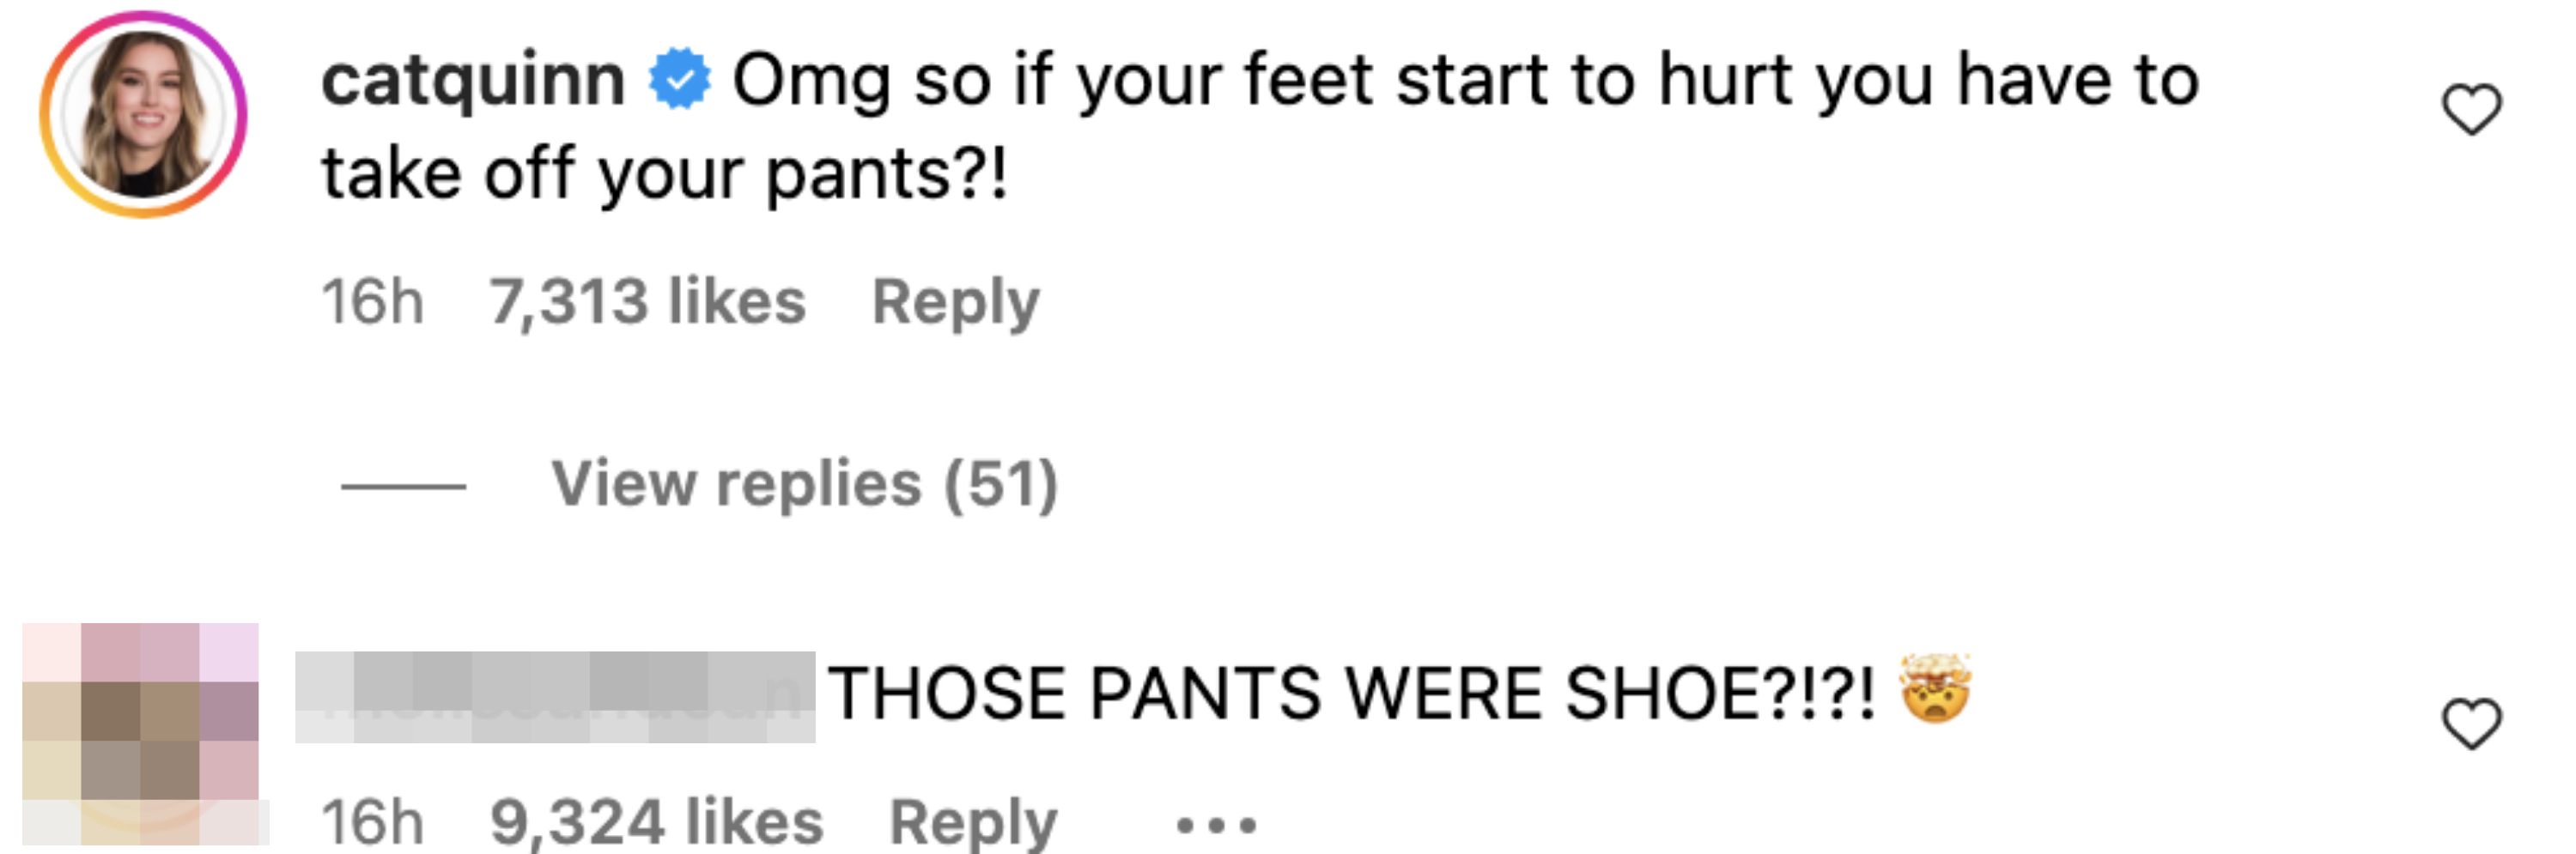 &quot;THOSE PANTS WERE SHOE?!?!&quot;